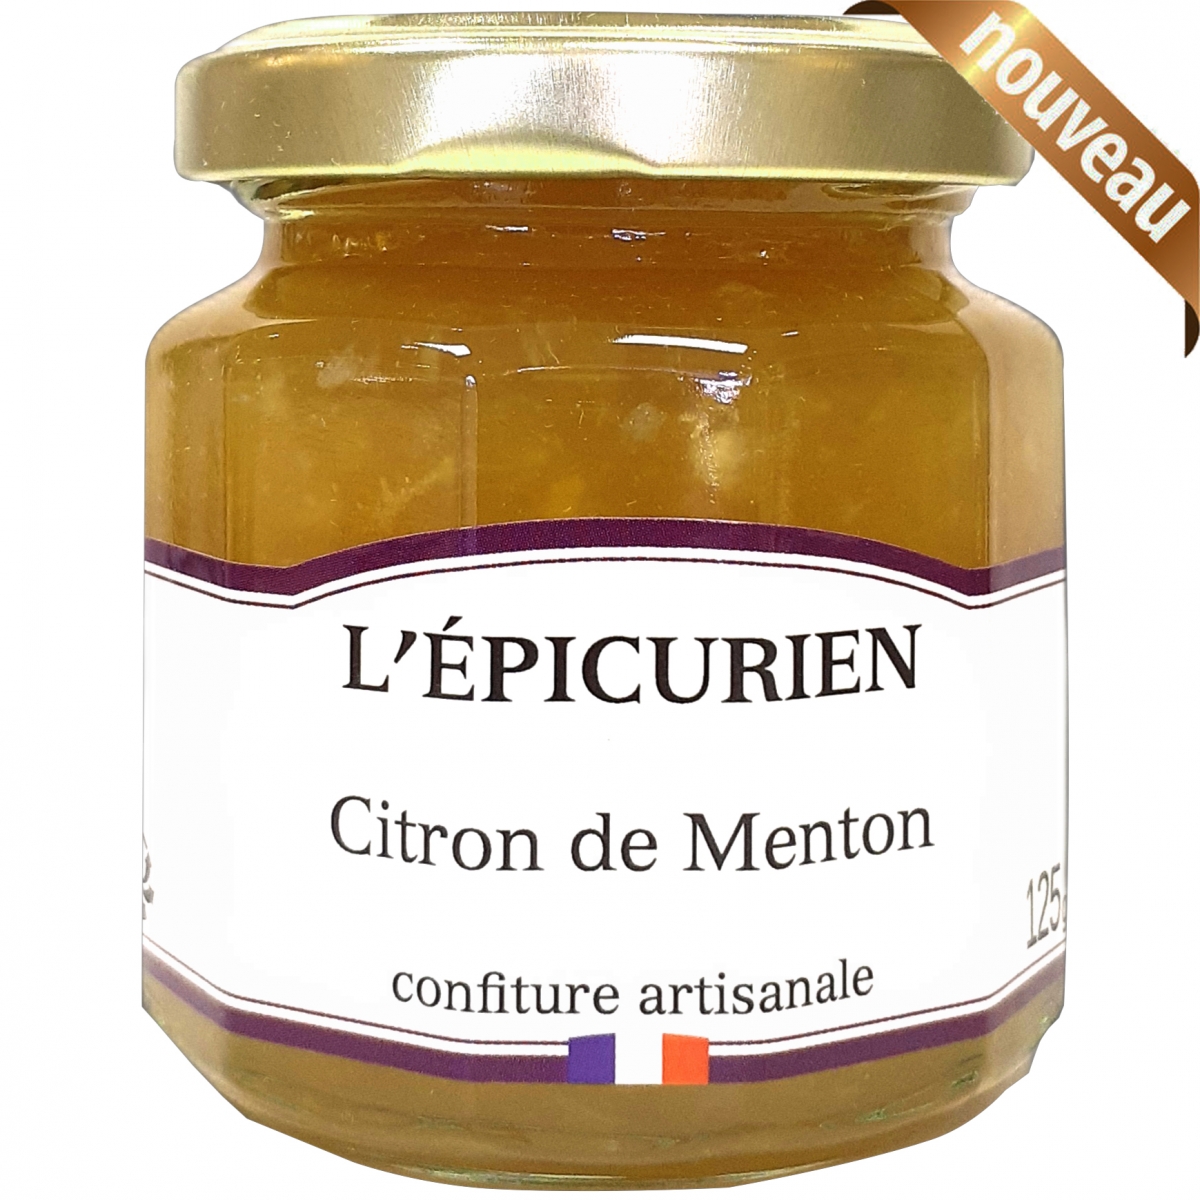 https://lesfruits.com/3366-large_default/confiture-citron-de-menton-125gr-lepicurien.jpg